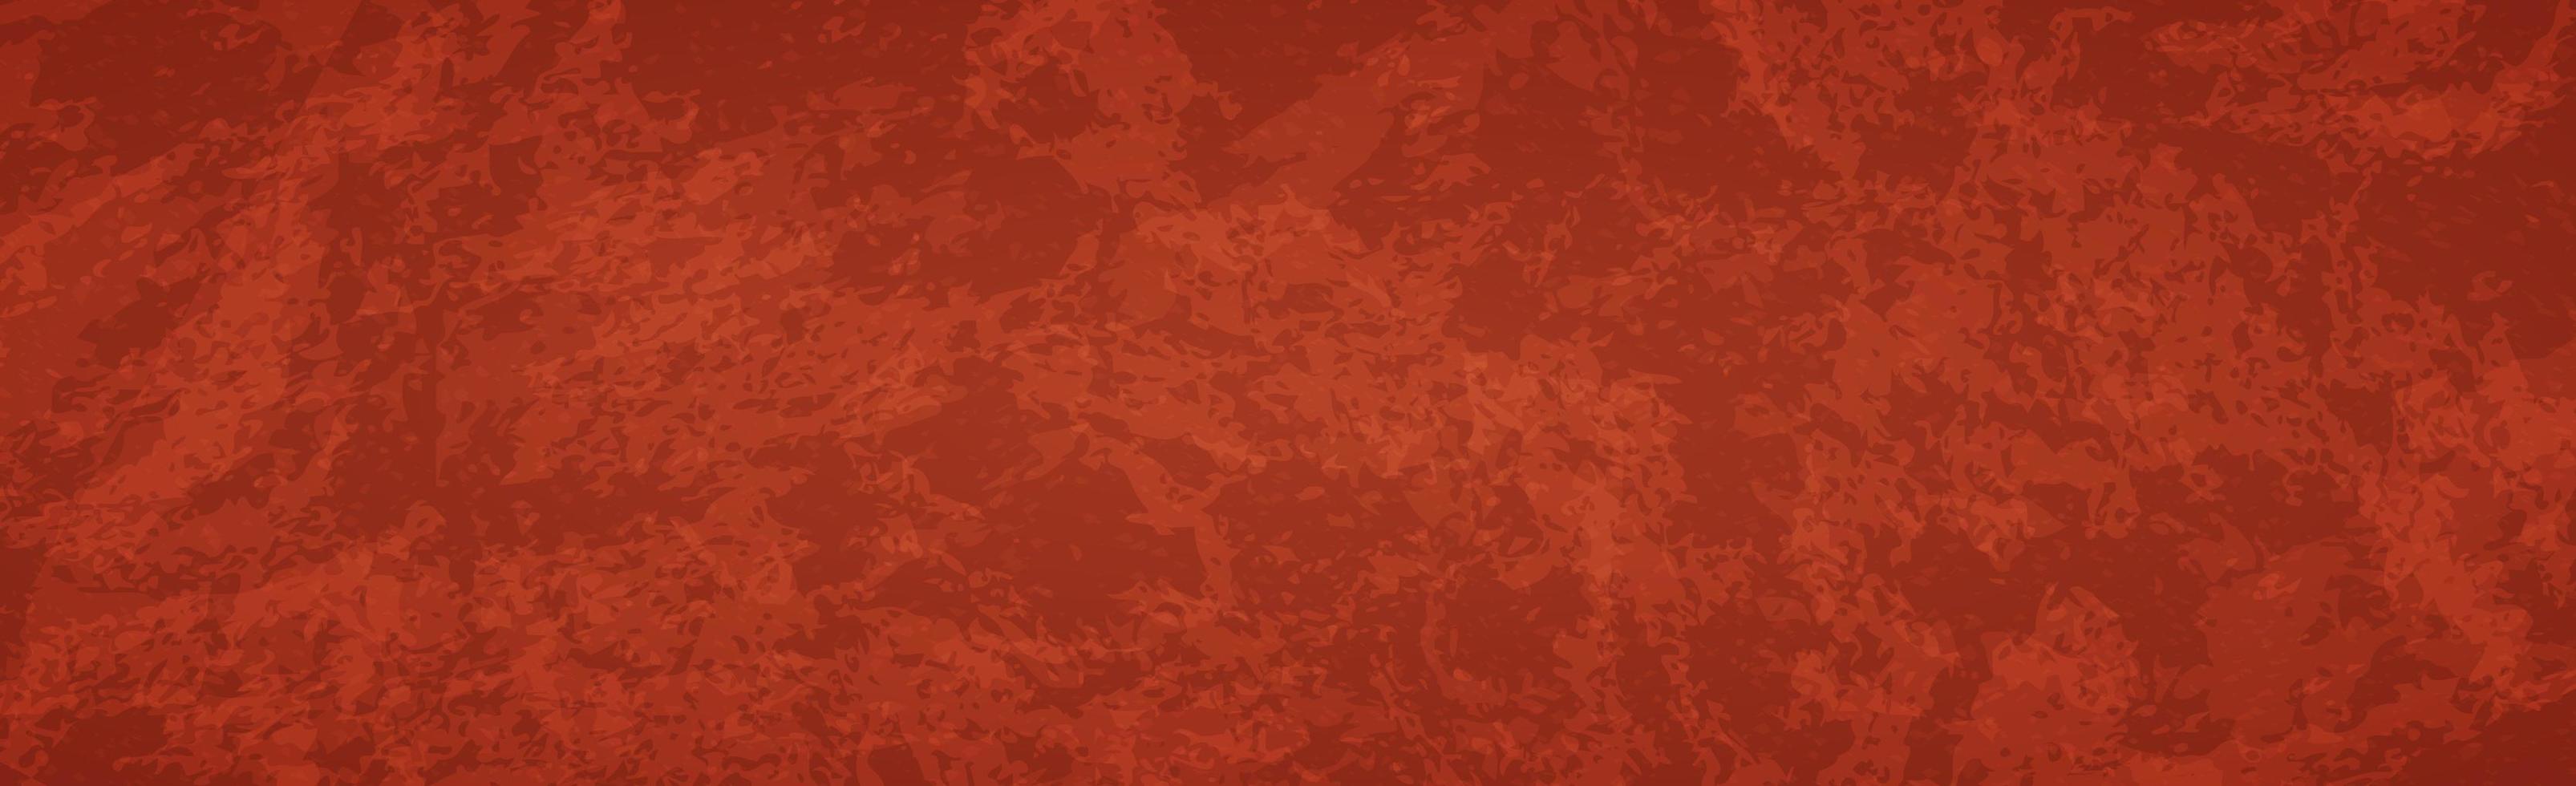 Panoramique rouge abstrait grunge foncé texturé - vecteur